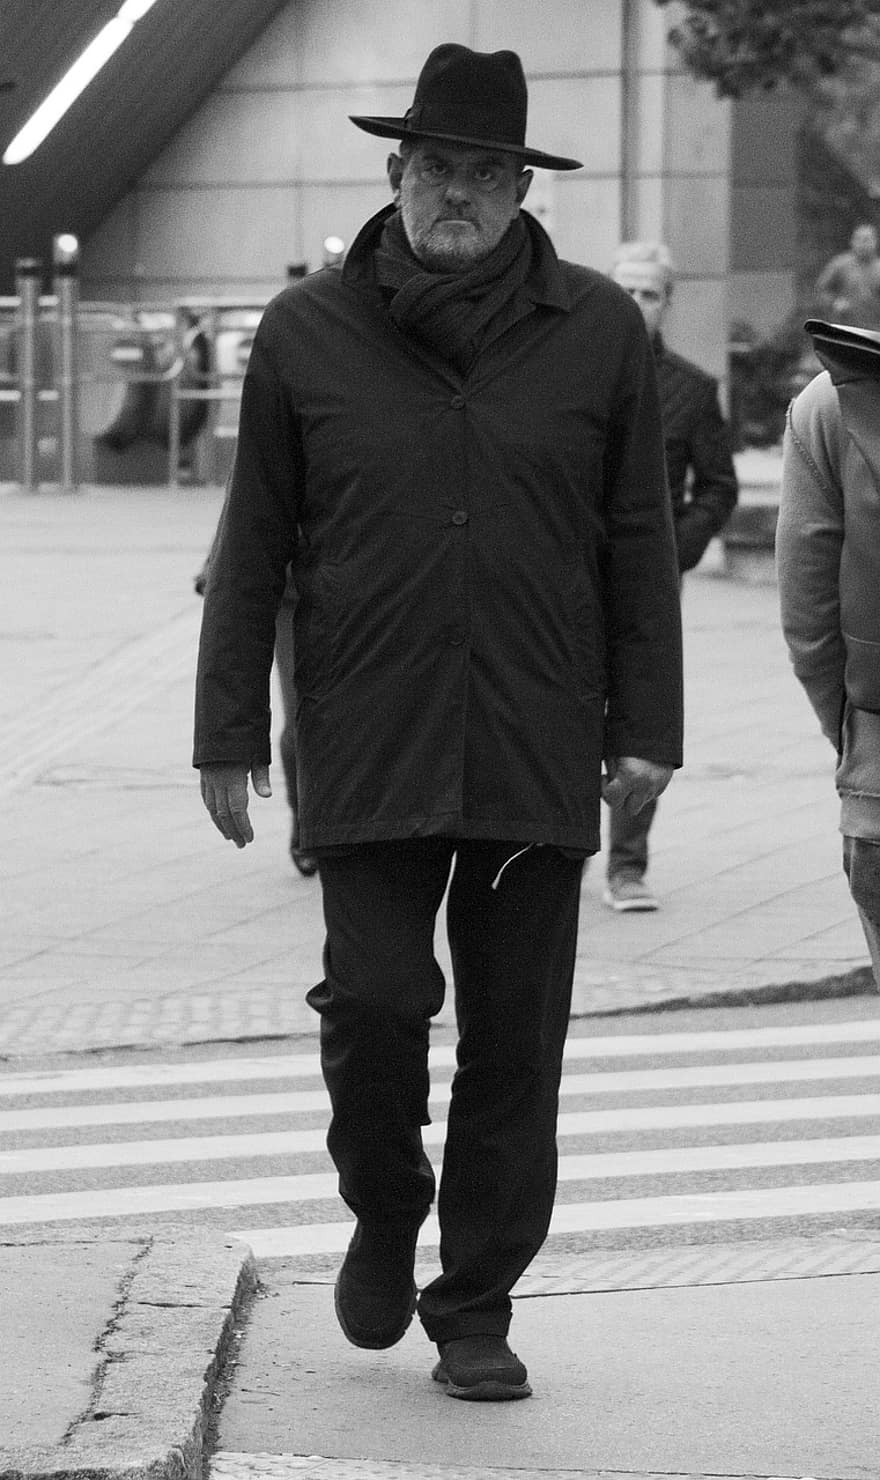 άνδρας, μονόχρωμος, δρόμος, καπέλο, αρσενικός, αγόρι, μόδα, άνδρες, μαύρο και άσπρο, το περπάτημα, ένα άτομο